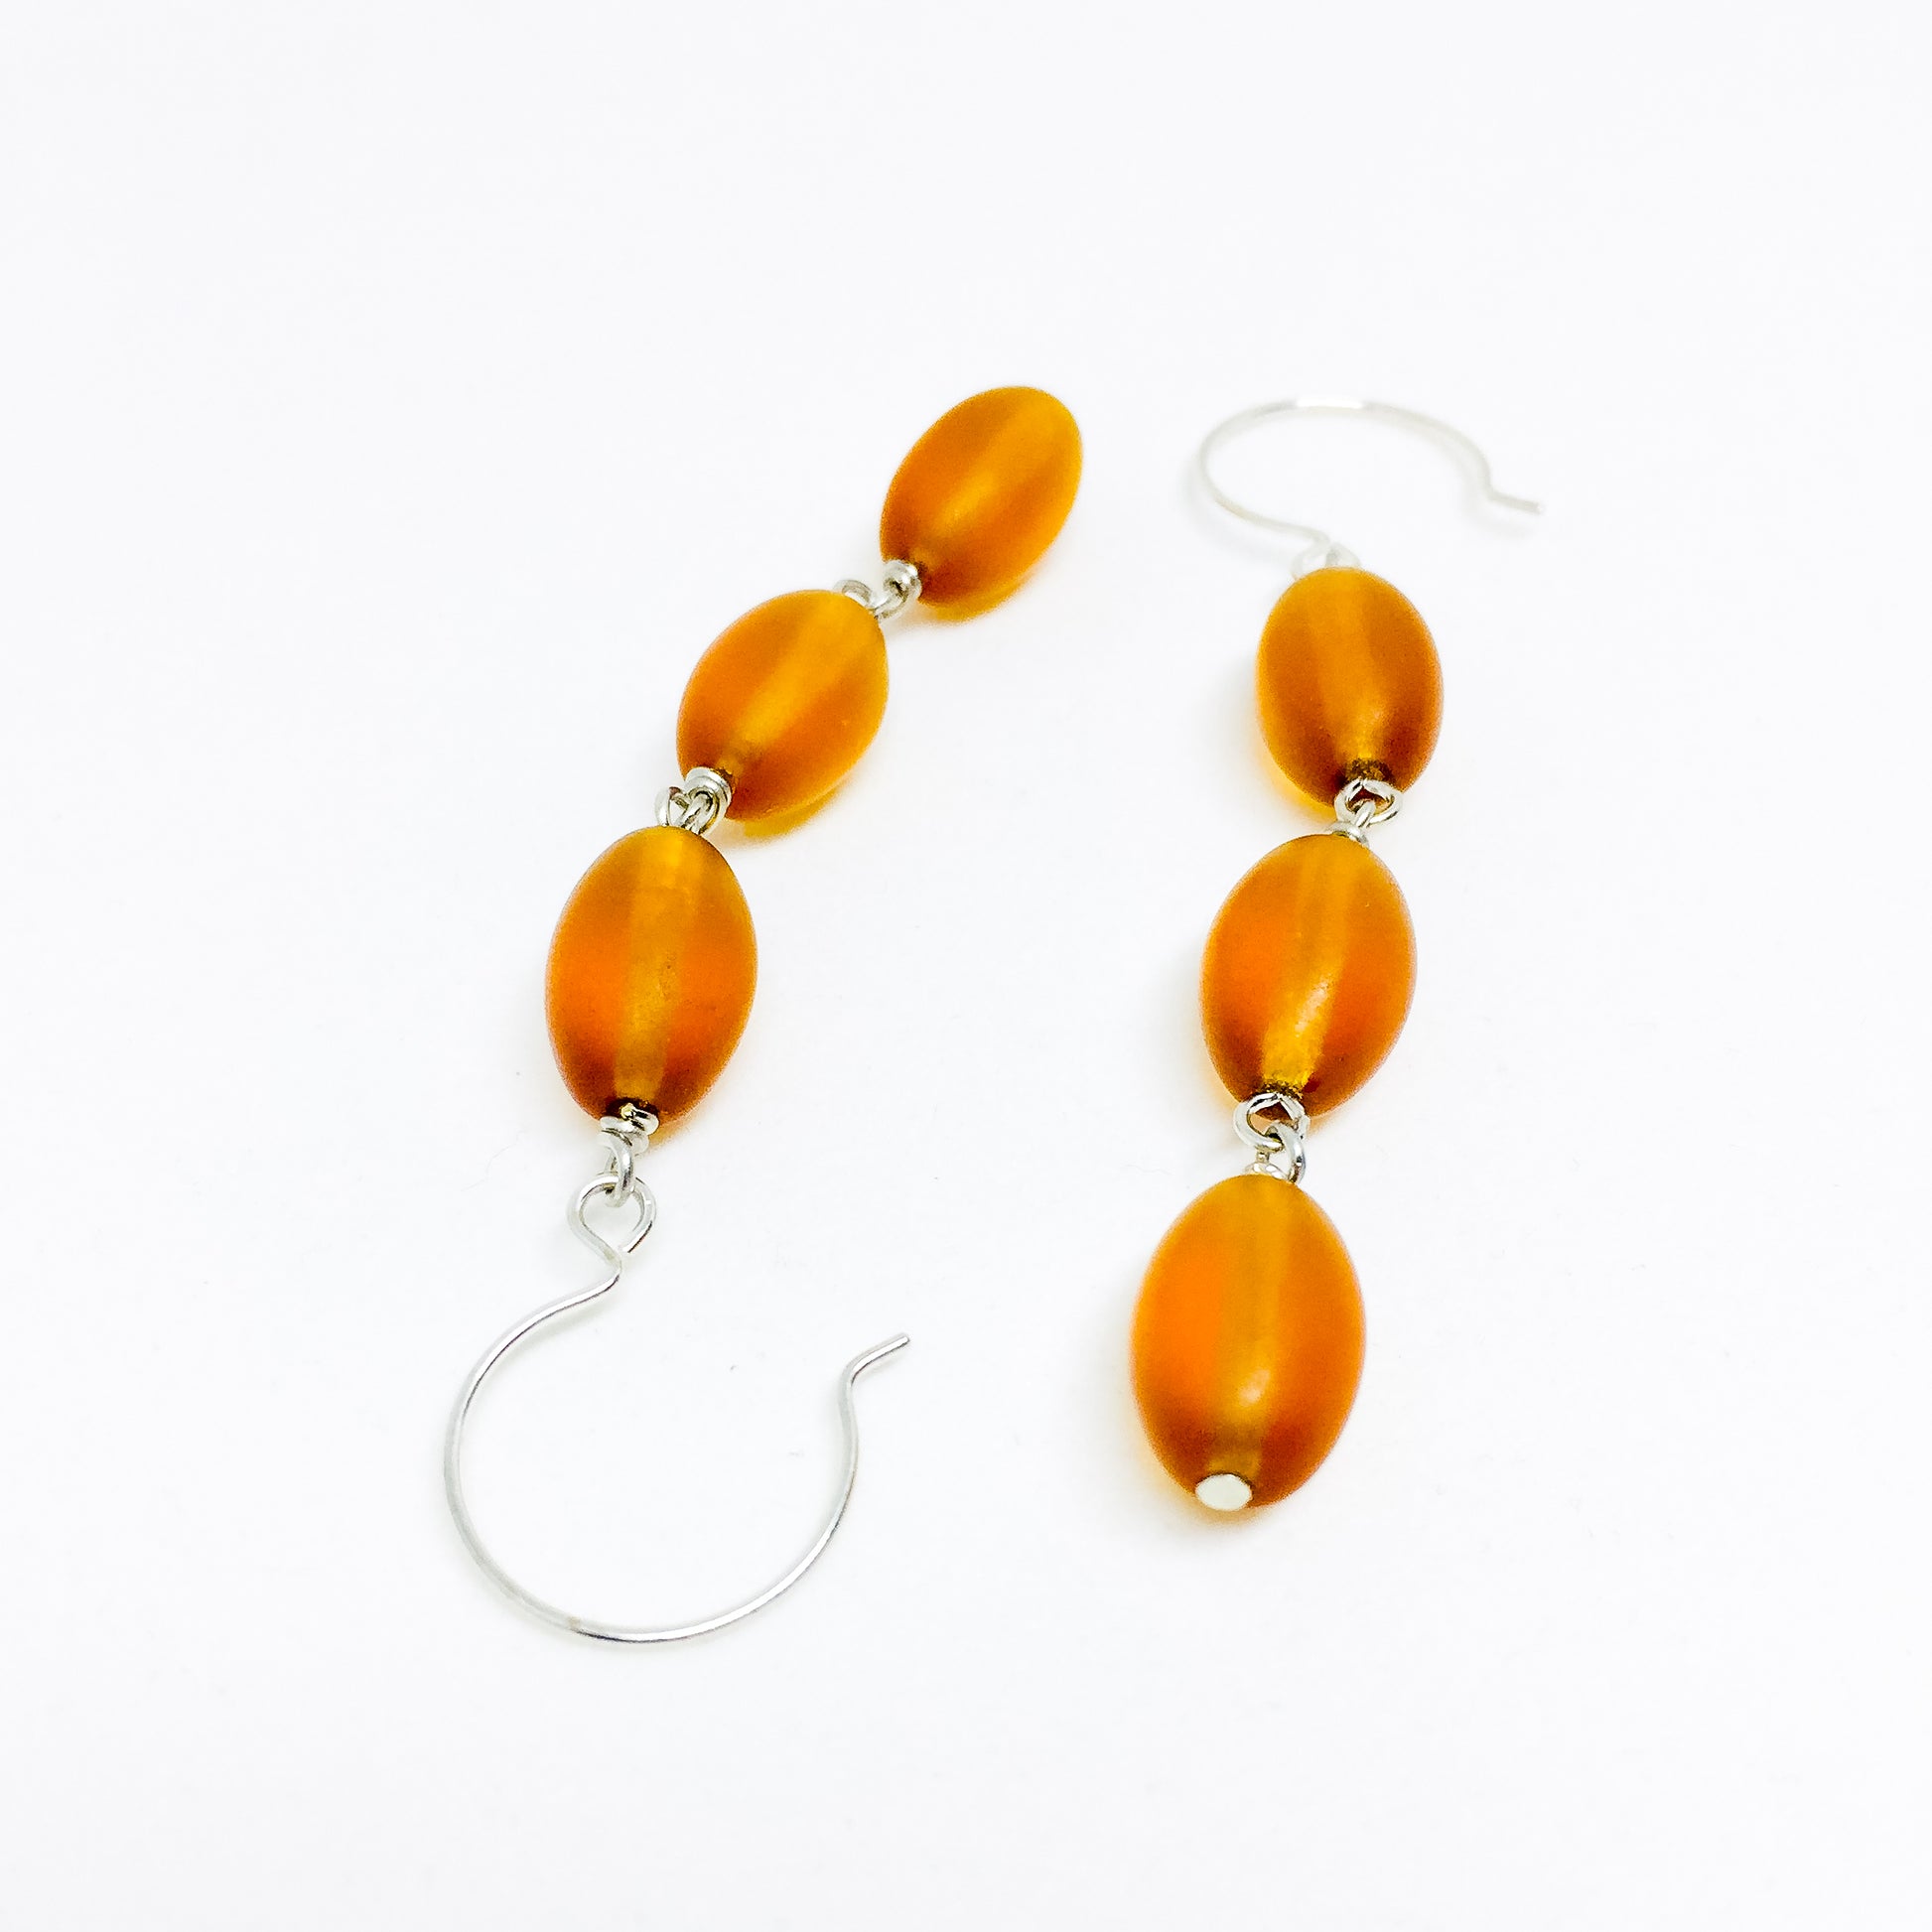 Frosted Czech glass bead drop earrings in amber frost